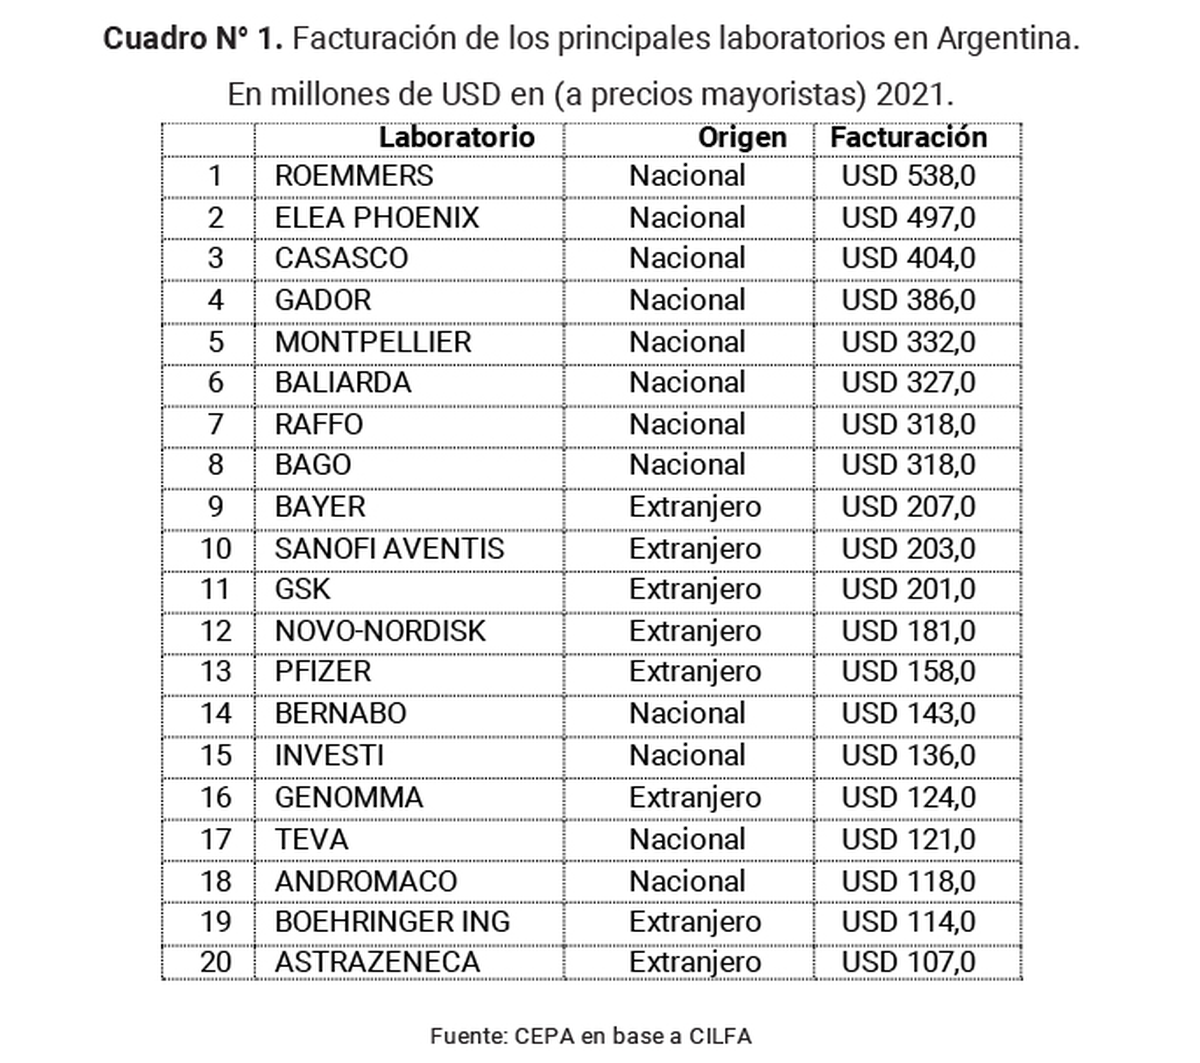 Facturación de los principales laboratorios en Argentina. En dólares a precios mayoristas en 2021.